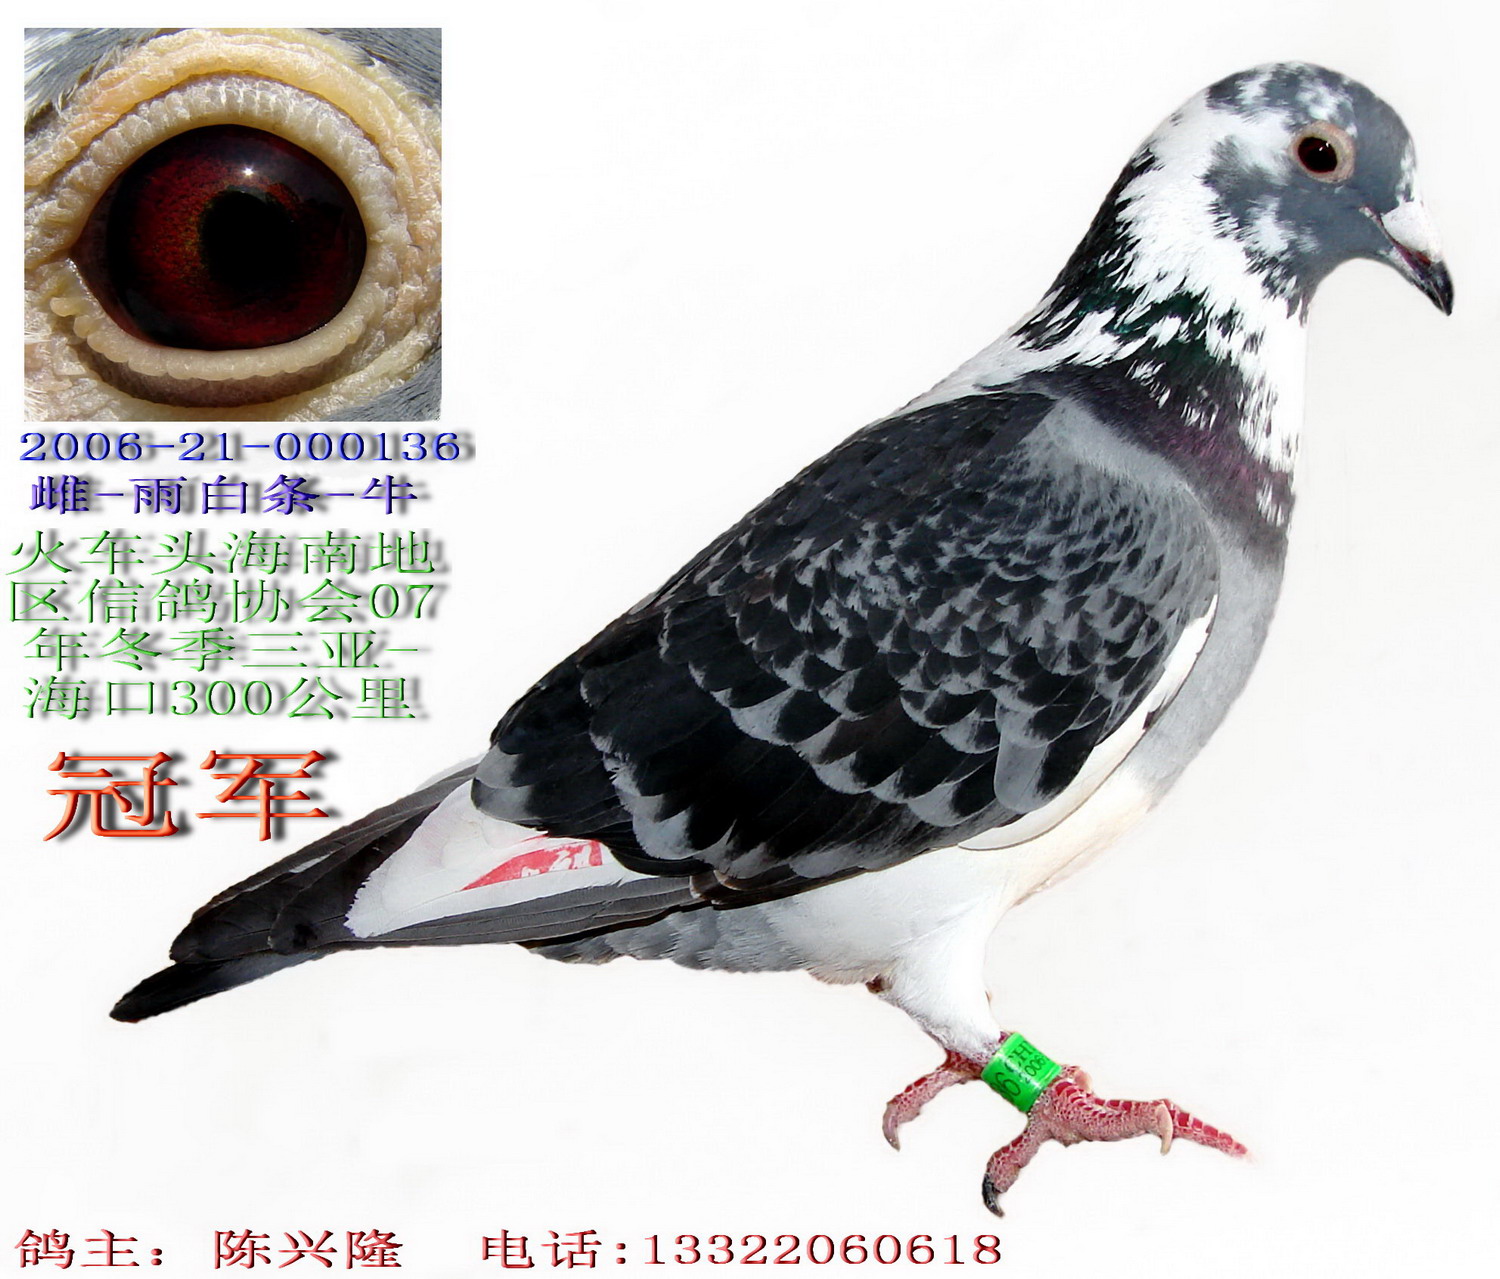 供应新疆白色俄罗斯鸽 蛇头鸽子图片价格 黄杠头型鸽图片-阿里巴巴